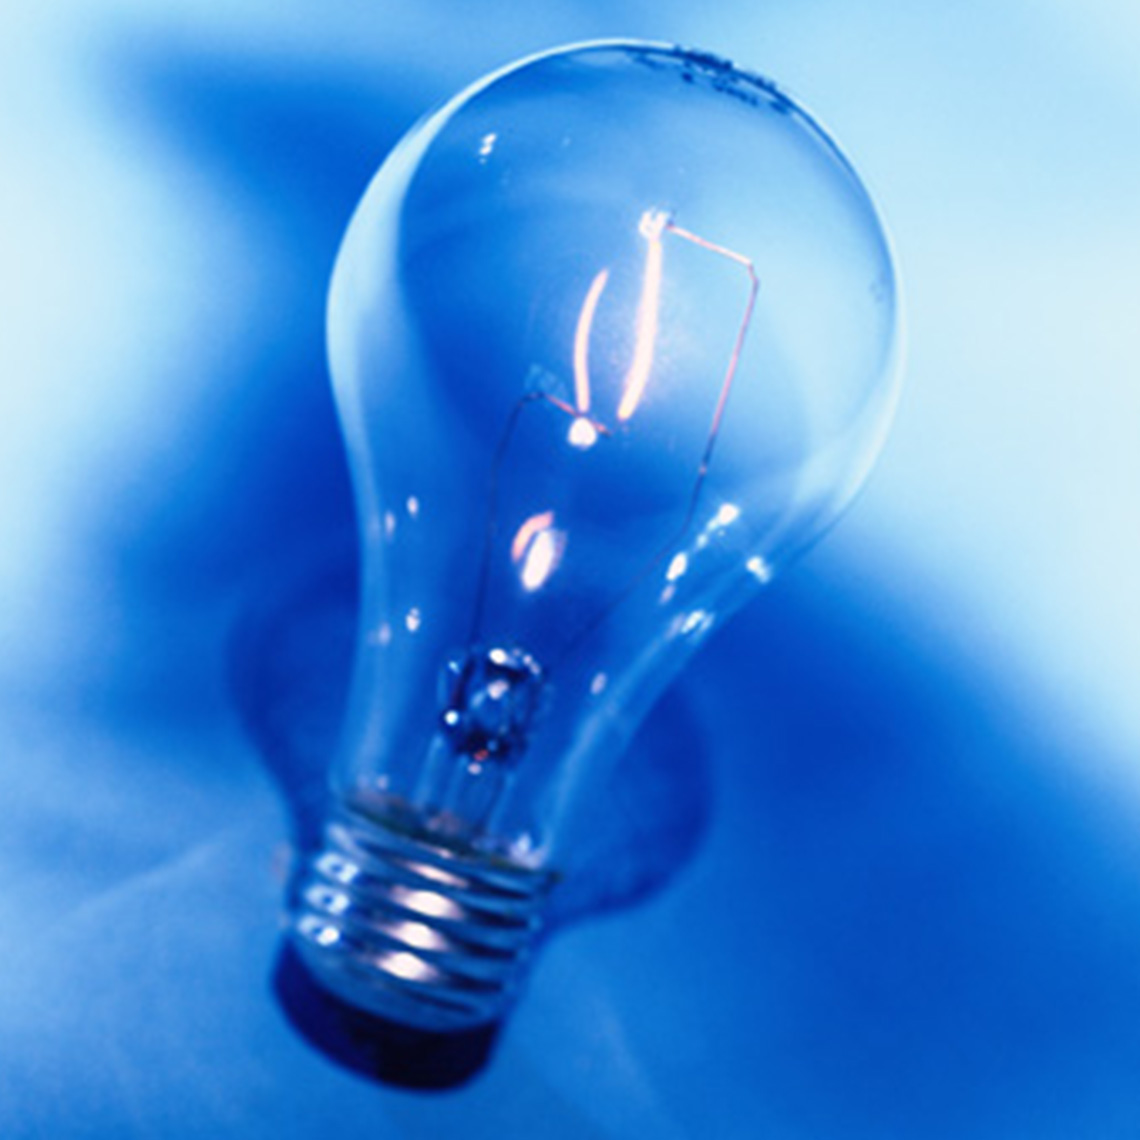 lightbulb on blue background